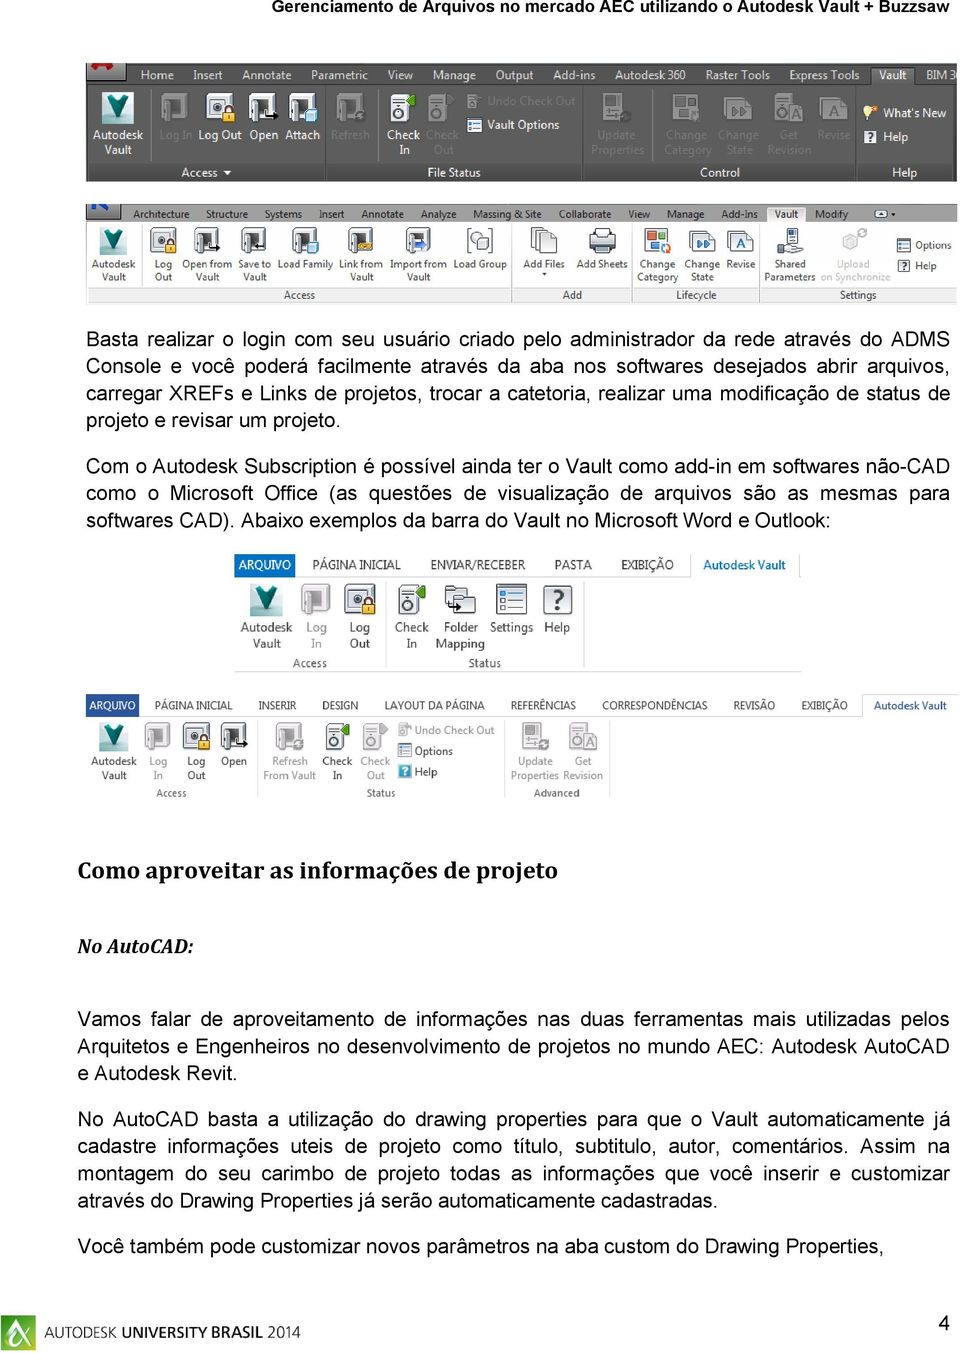 Com o Autodesk Subscription é possível ainda ter o Vault como add-in em softwares não-cad como o Microsoft Office (as questões de visualização de arquivos são as mesmas para softwares CAD).